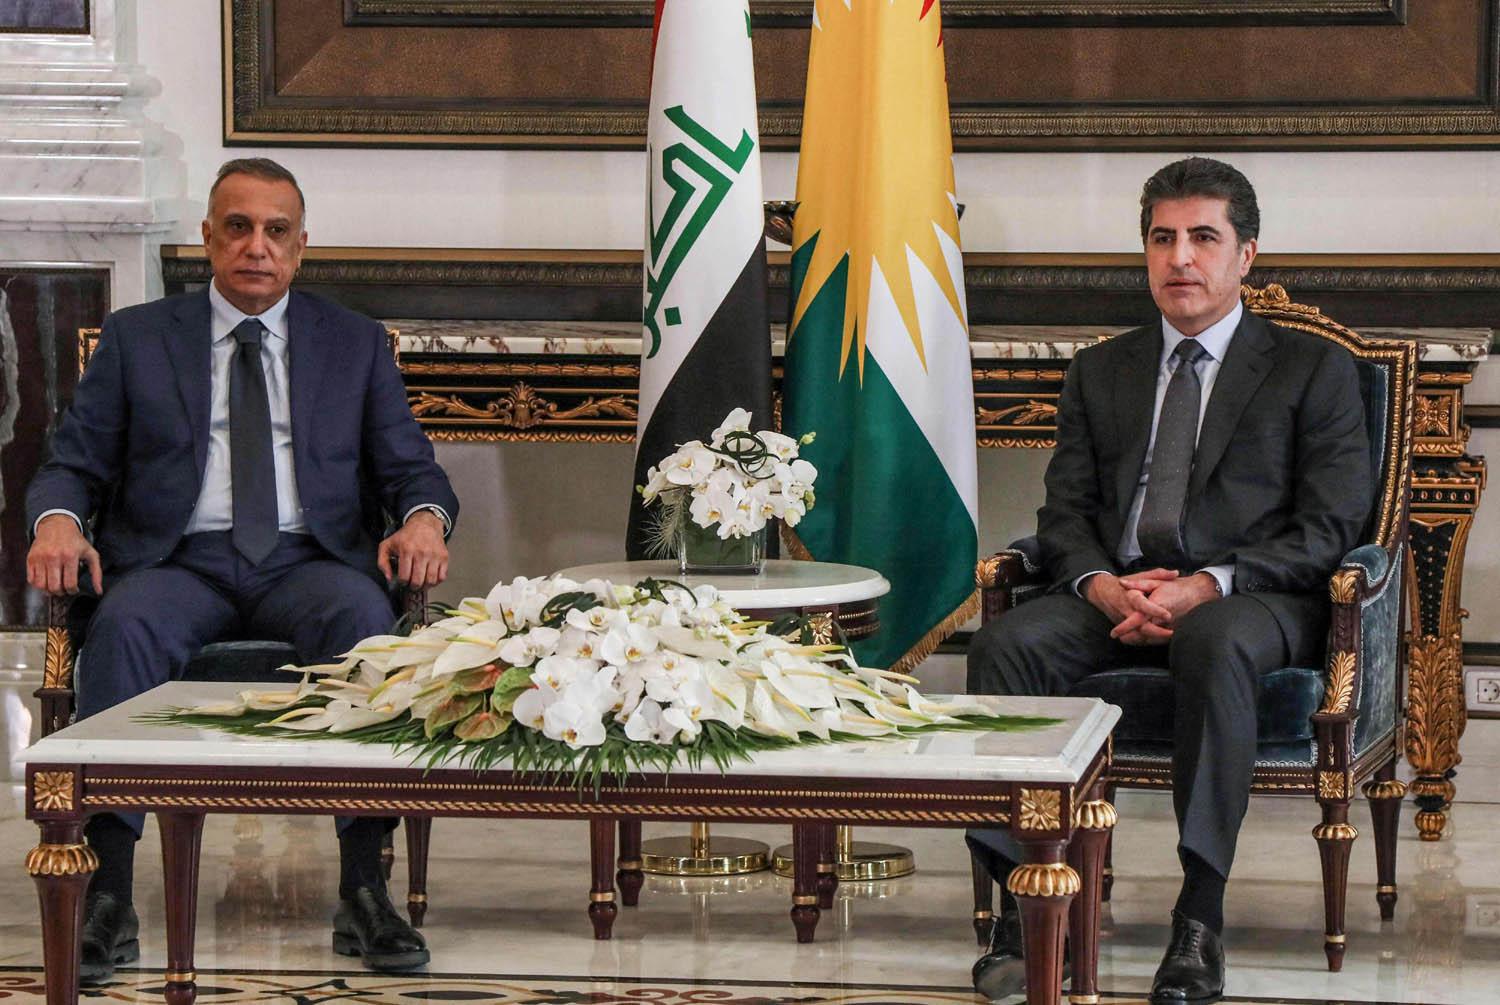 رئيس إقليم كردستان نيجيرفان بارزاني يستقبل رئيس الحكومة العراقية في حينه مصطفى الكاظمي